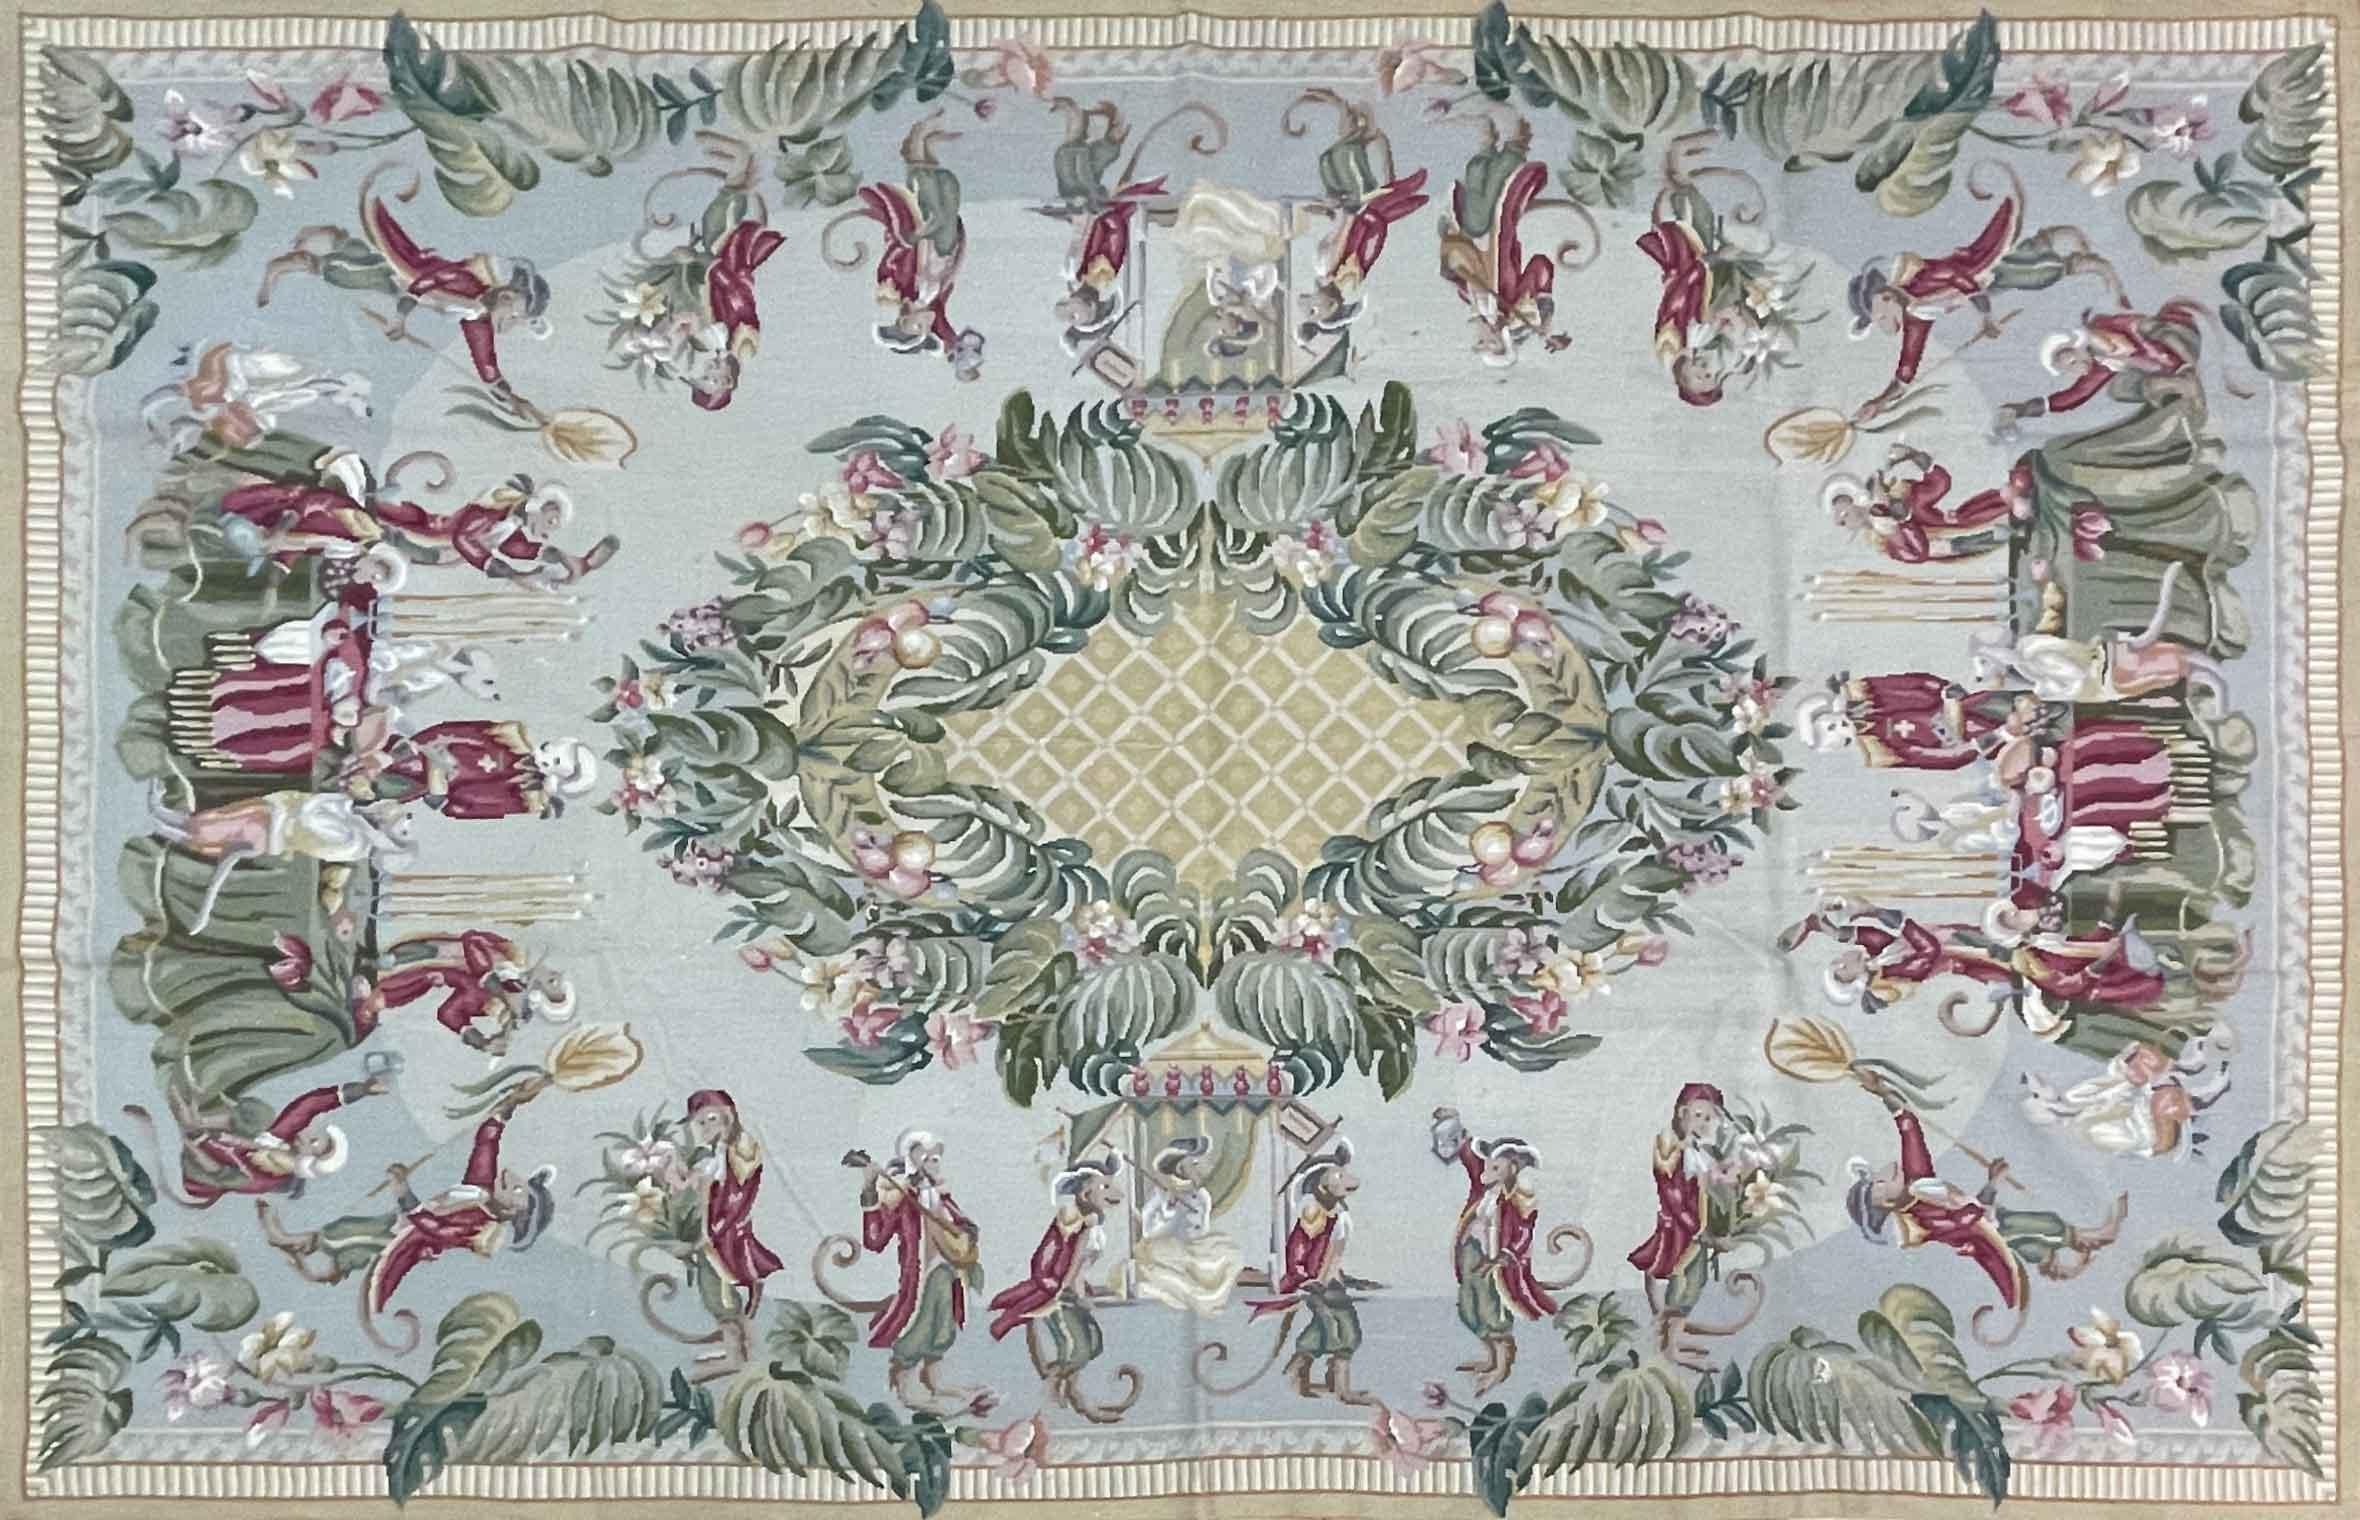 Magnifique tapis vintage en laine à l'aiguille de style français avec un vert sourd.  champ. Un magnifique motif floral d'Aubusson.

Ce tapis mesure 5'8